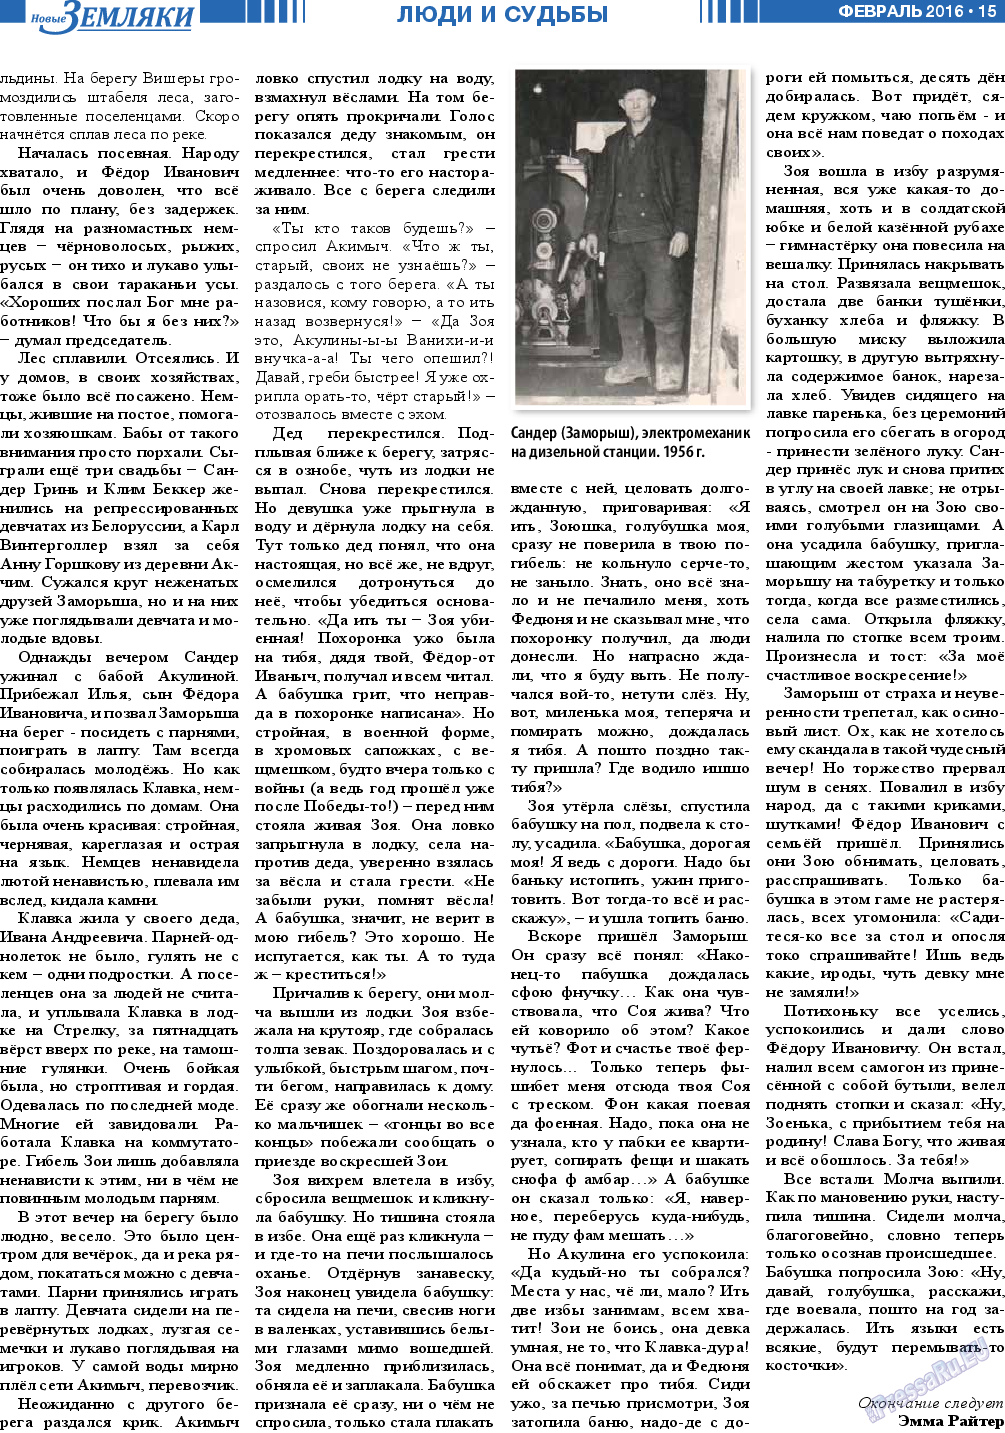 Новые Земляки, газета. 2016 №2 стр.15